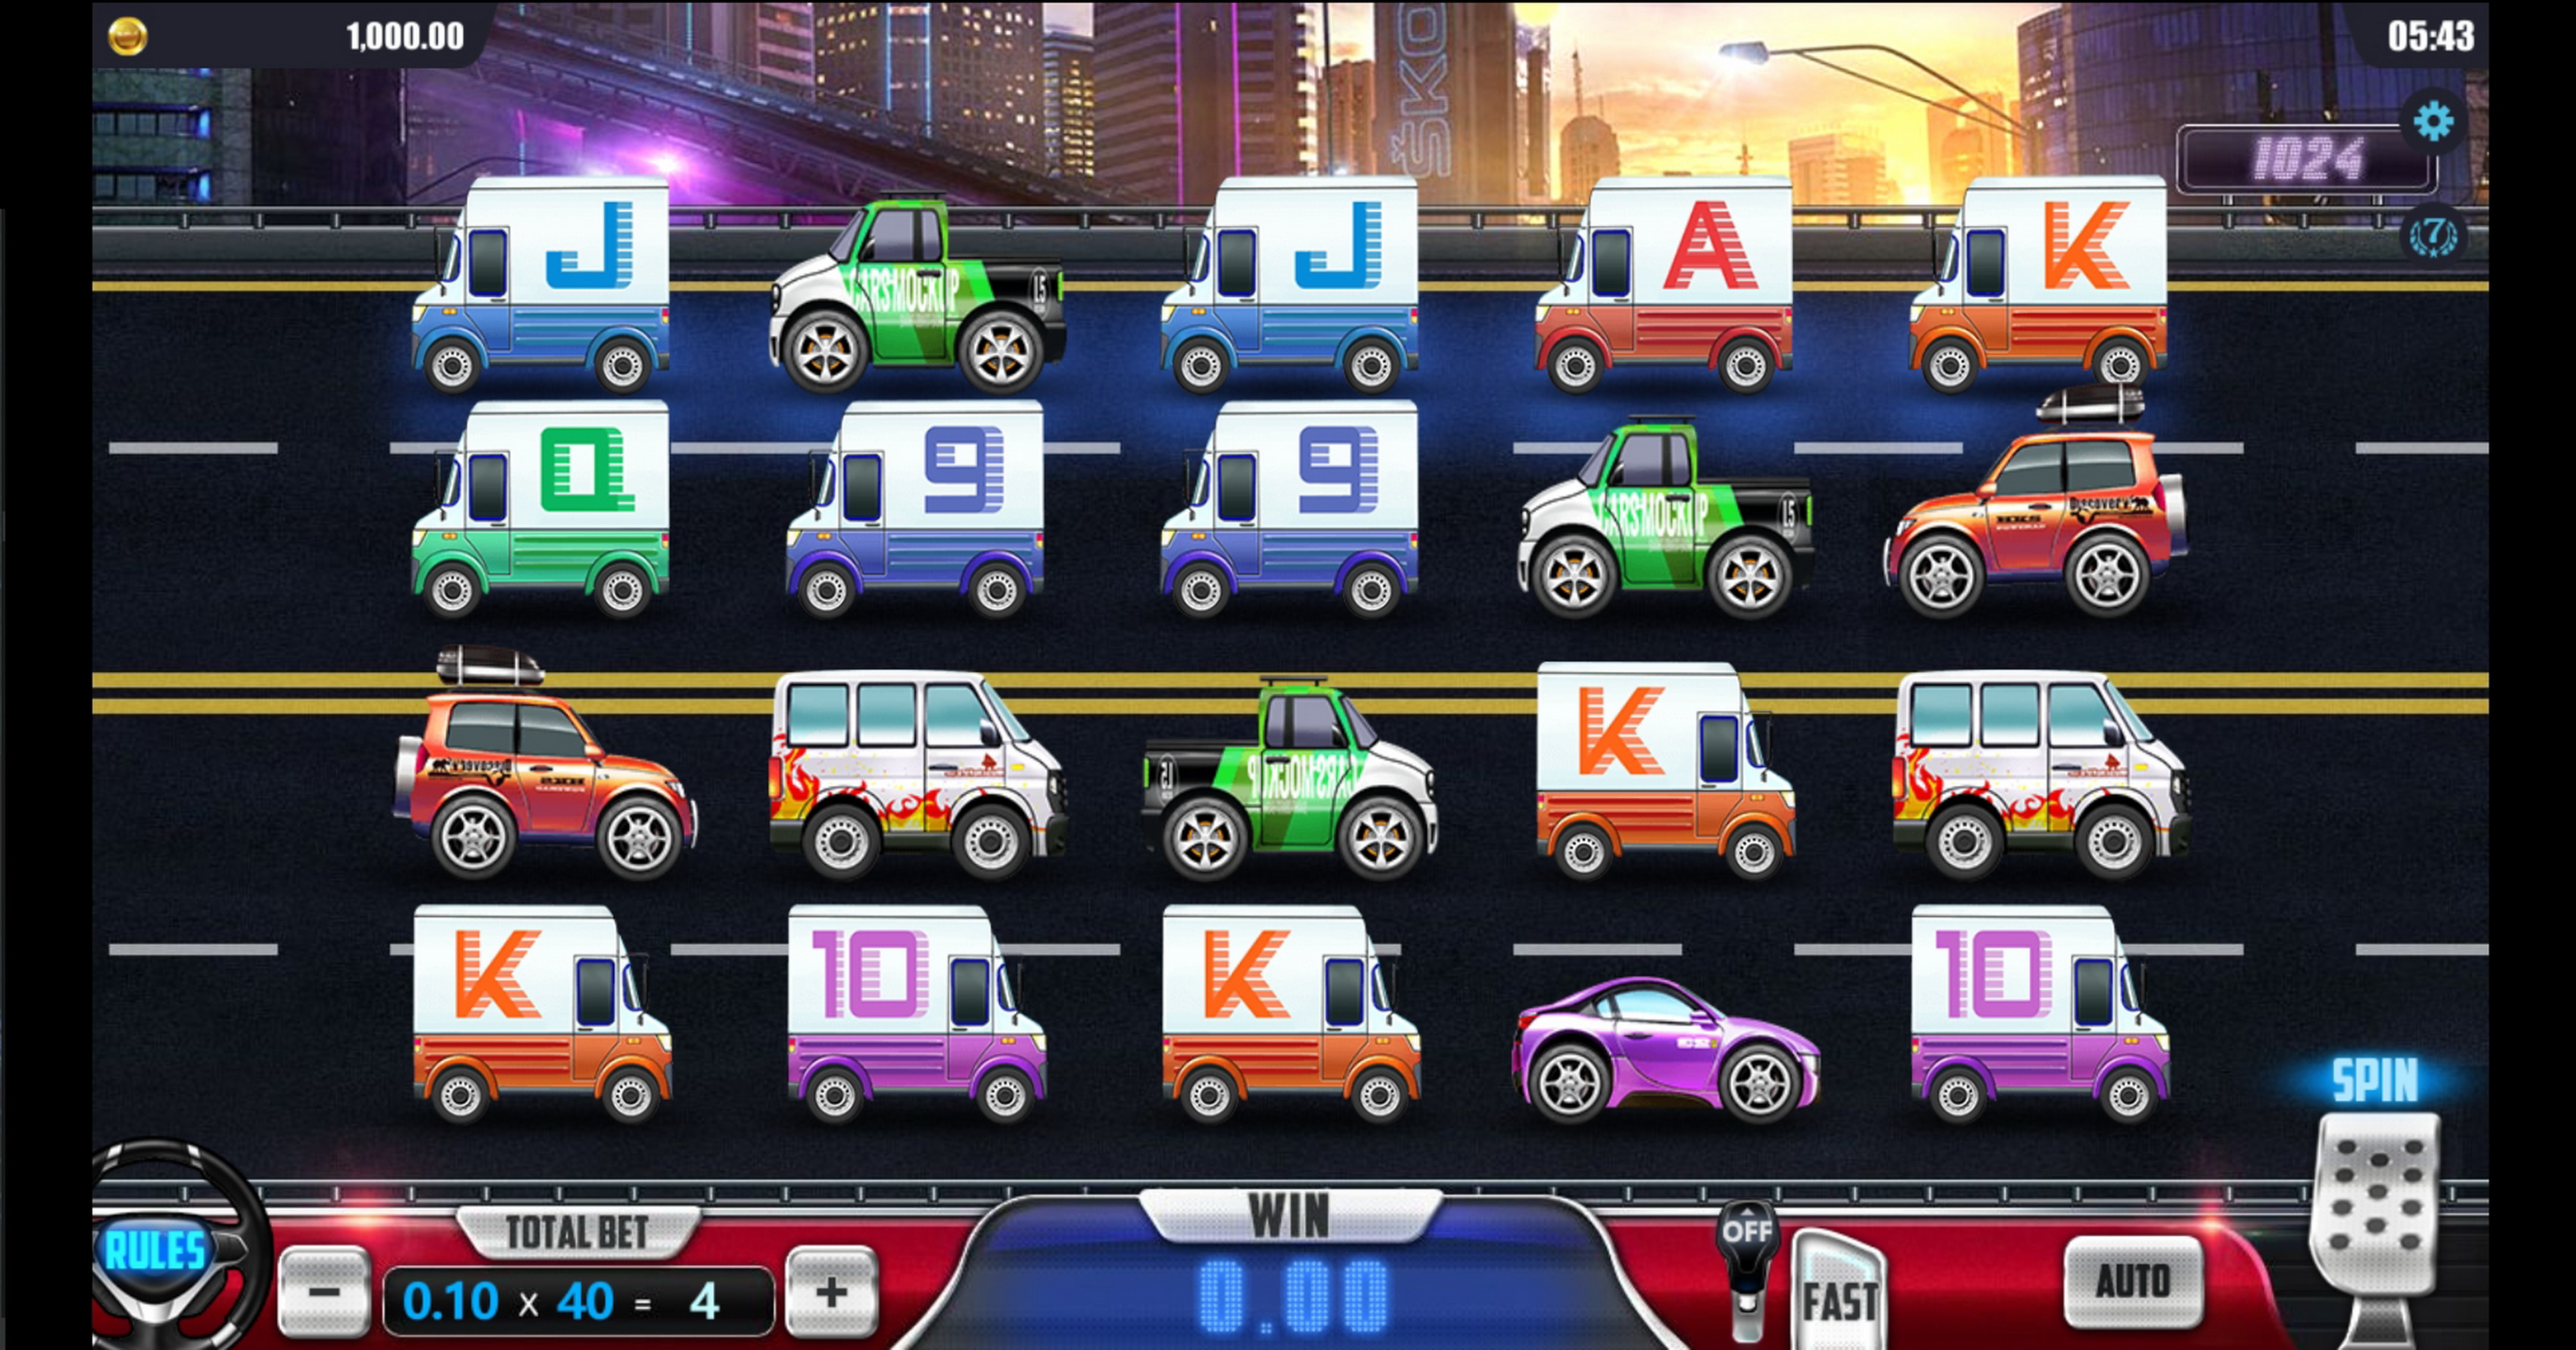 Reels in Cross Road Slot Game by Dreamtech Gaming